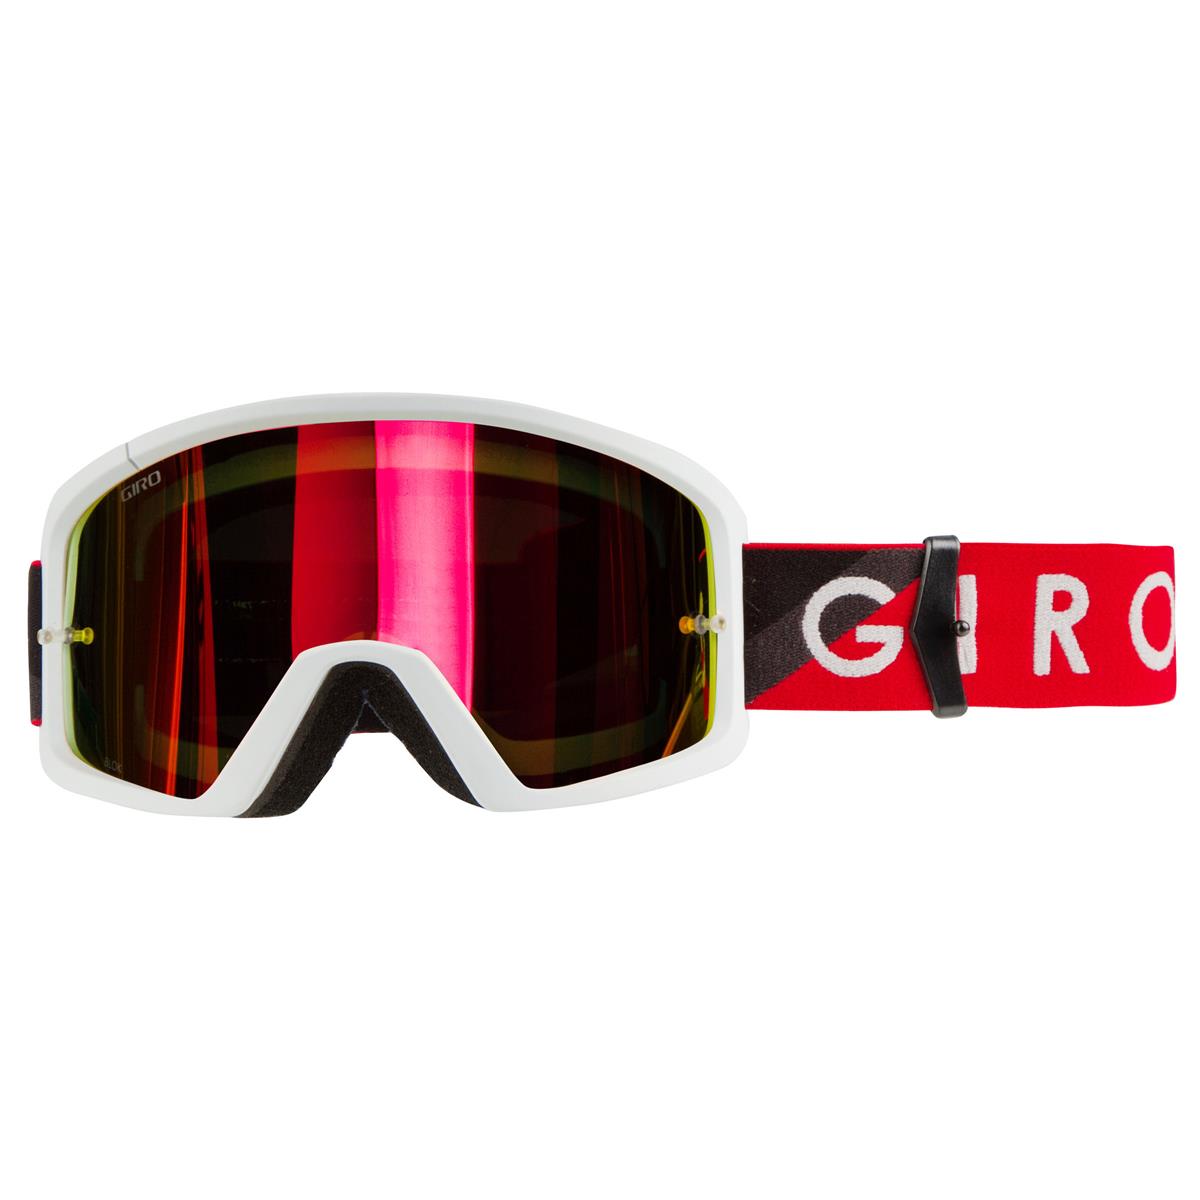 Giro Goggle Blok Red/Grey - Amber Clear Anti-Fog